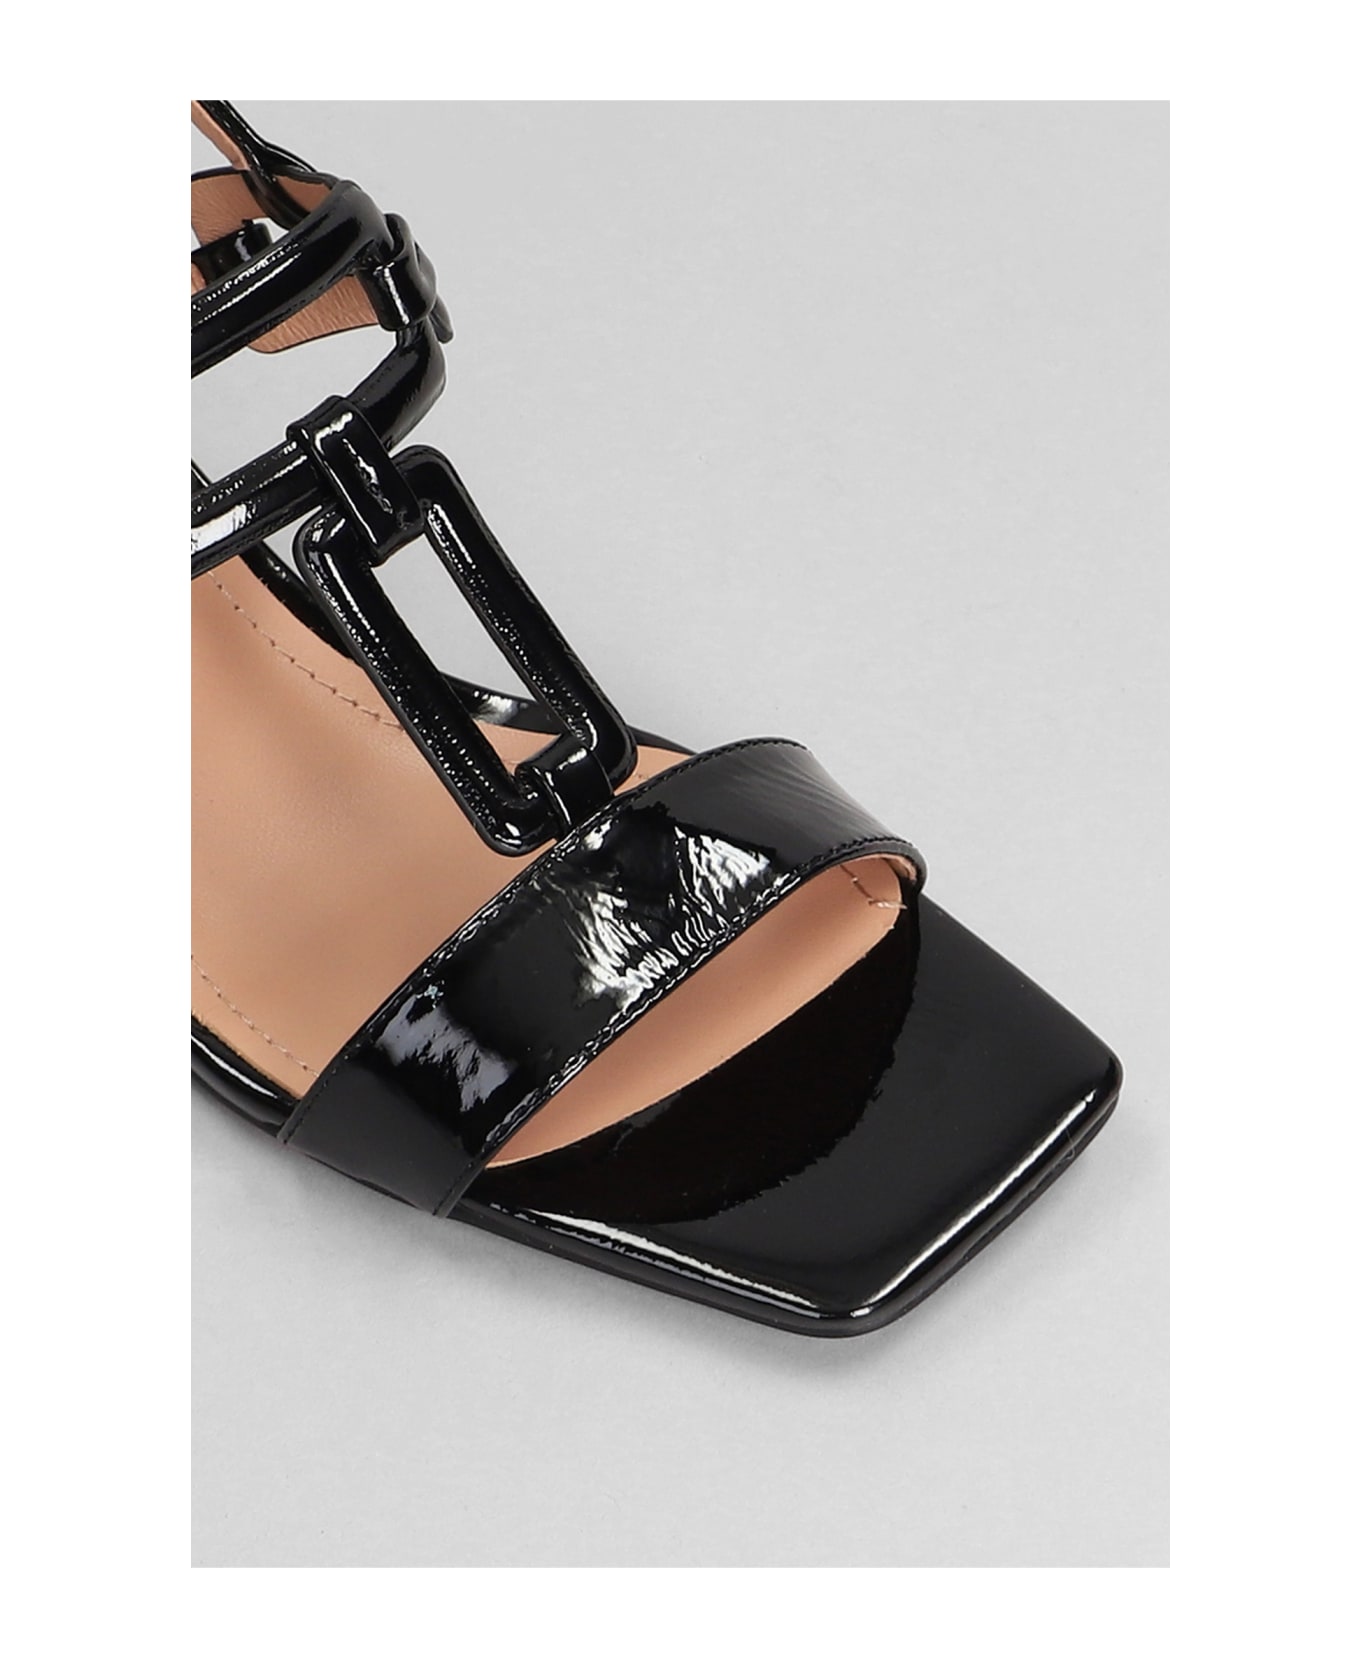 Bibi Lou Zinnia 50 Sandals In Black Patent Leather - black